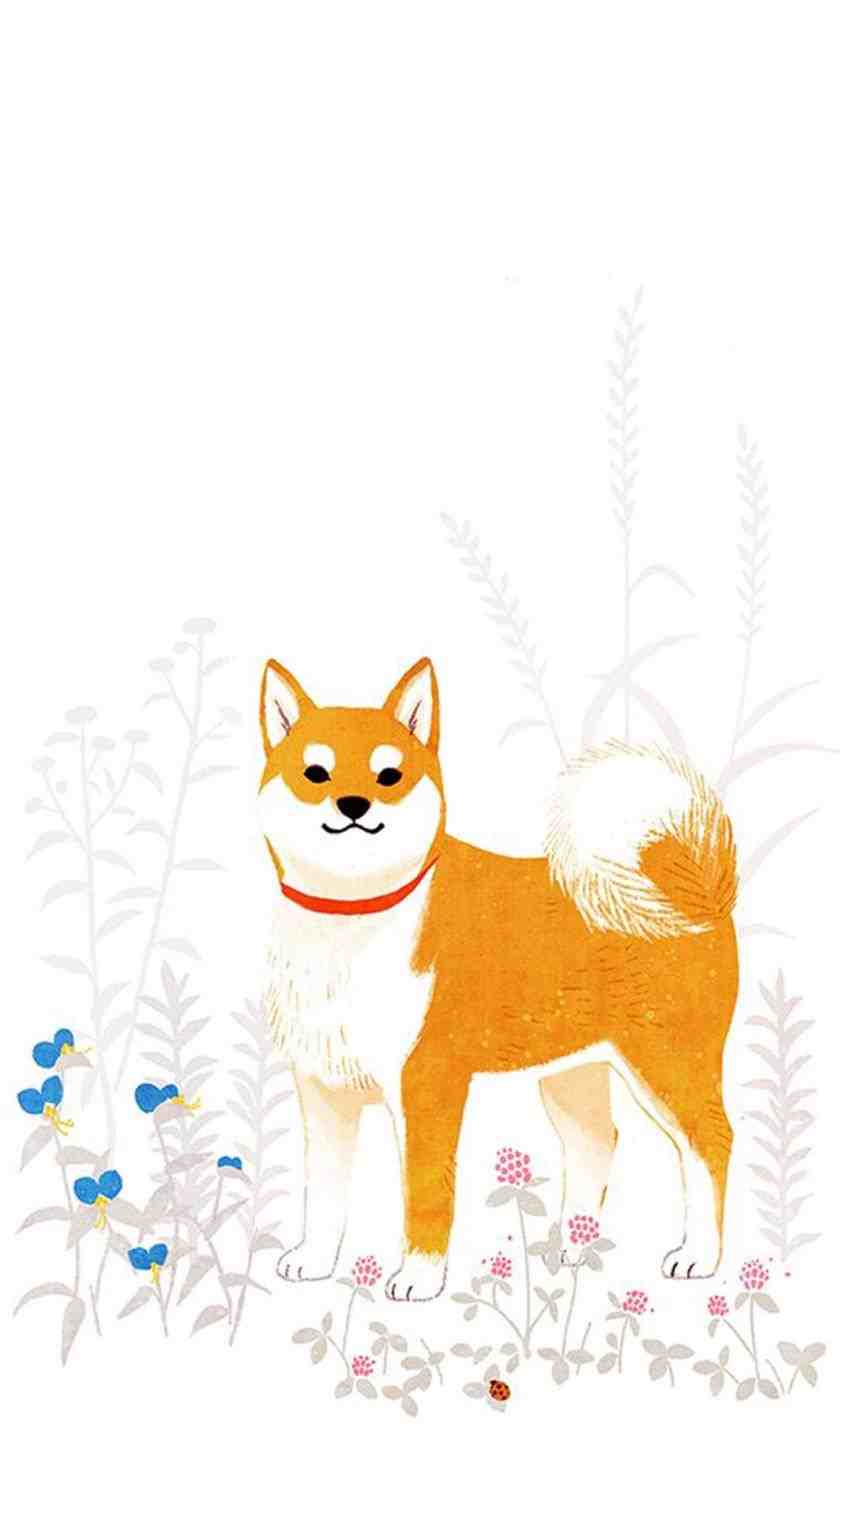 Dog Cartoon iPhone Wallpapers - Top Free Dog Cartoon iPhone Backgrounds